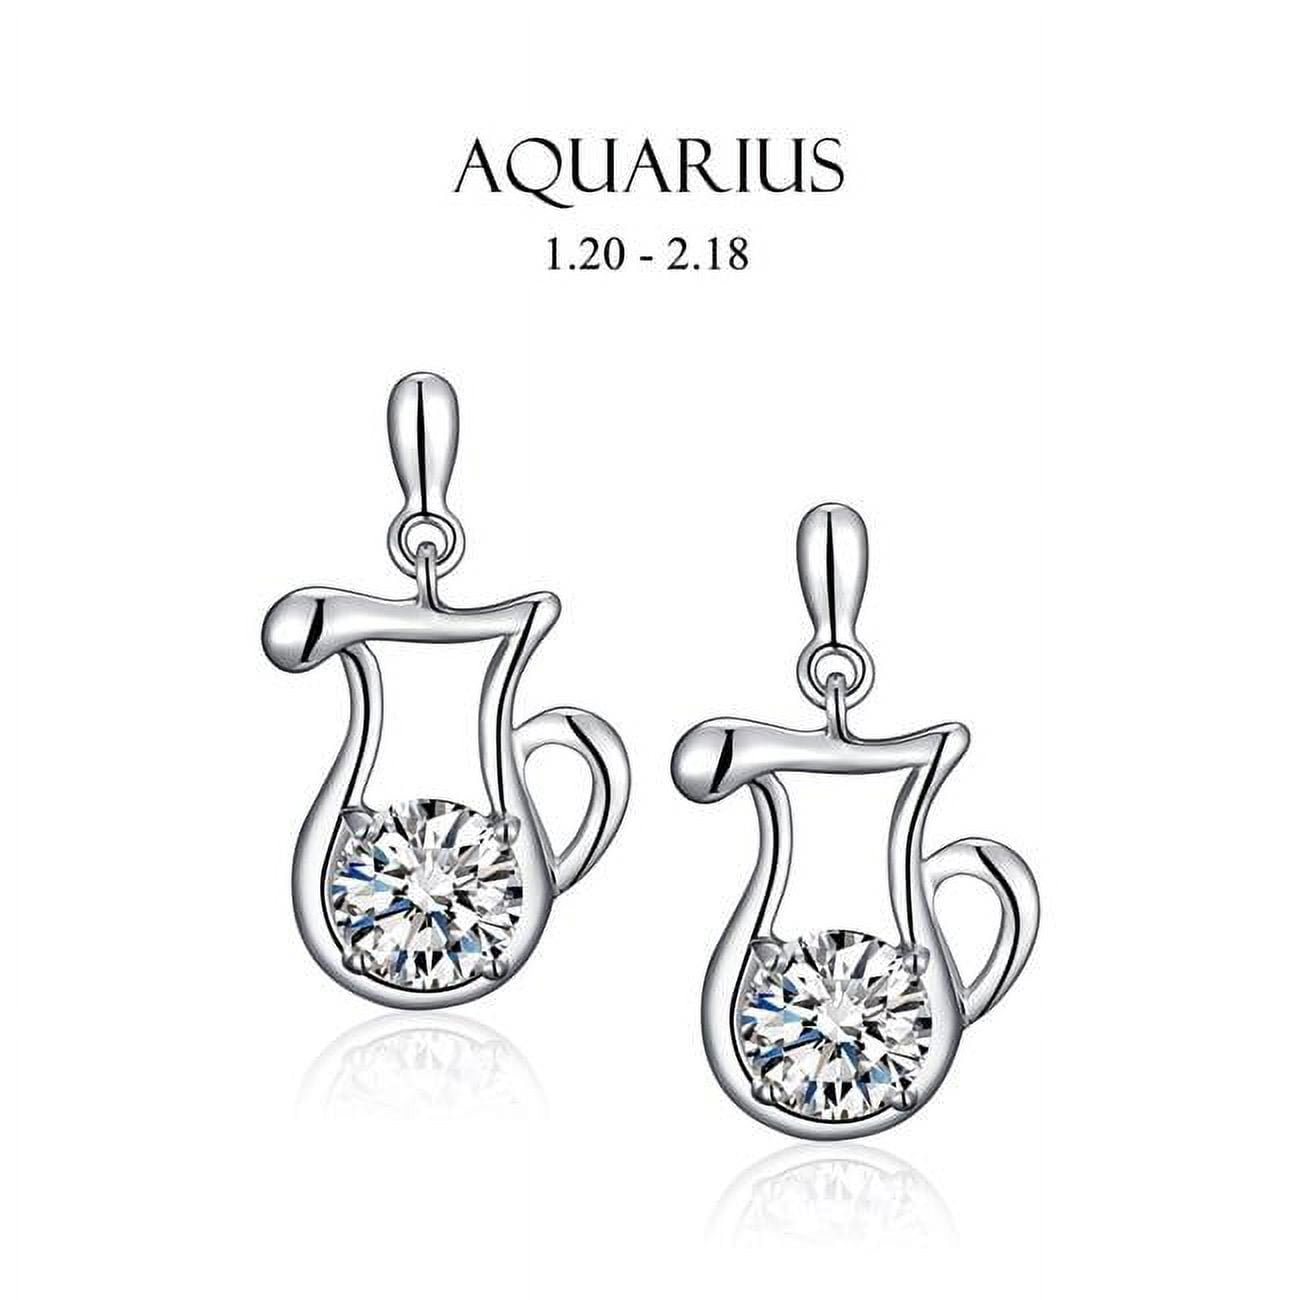 Picture of Amabel Designs E-I2CZAQR-RDM Rhodium Cubic Zirconia Aquarius Stud Earrings